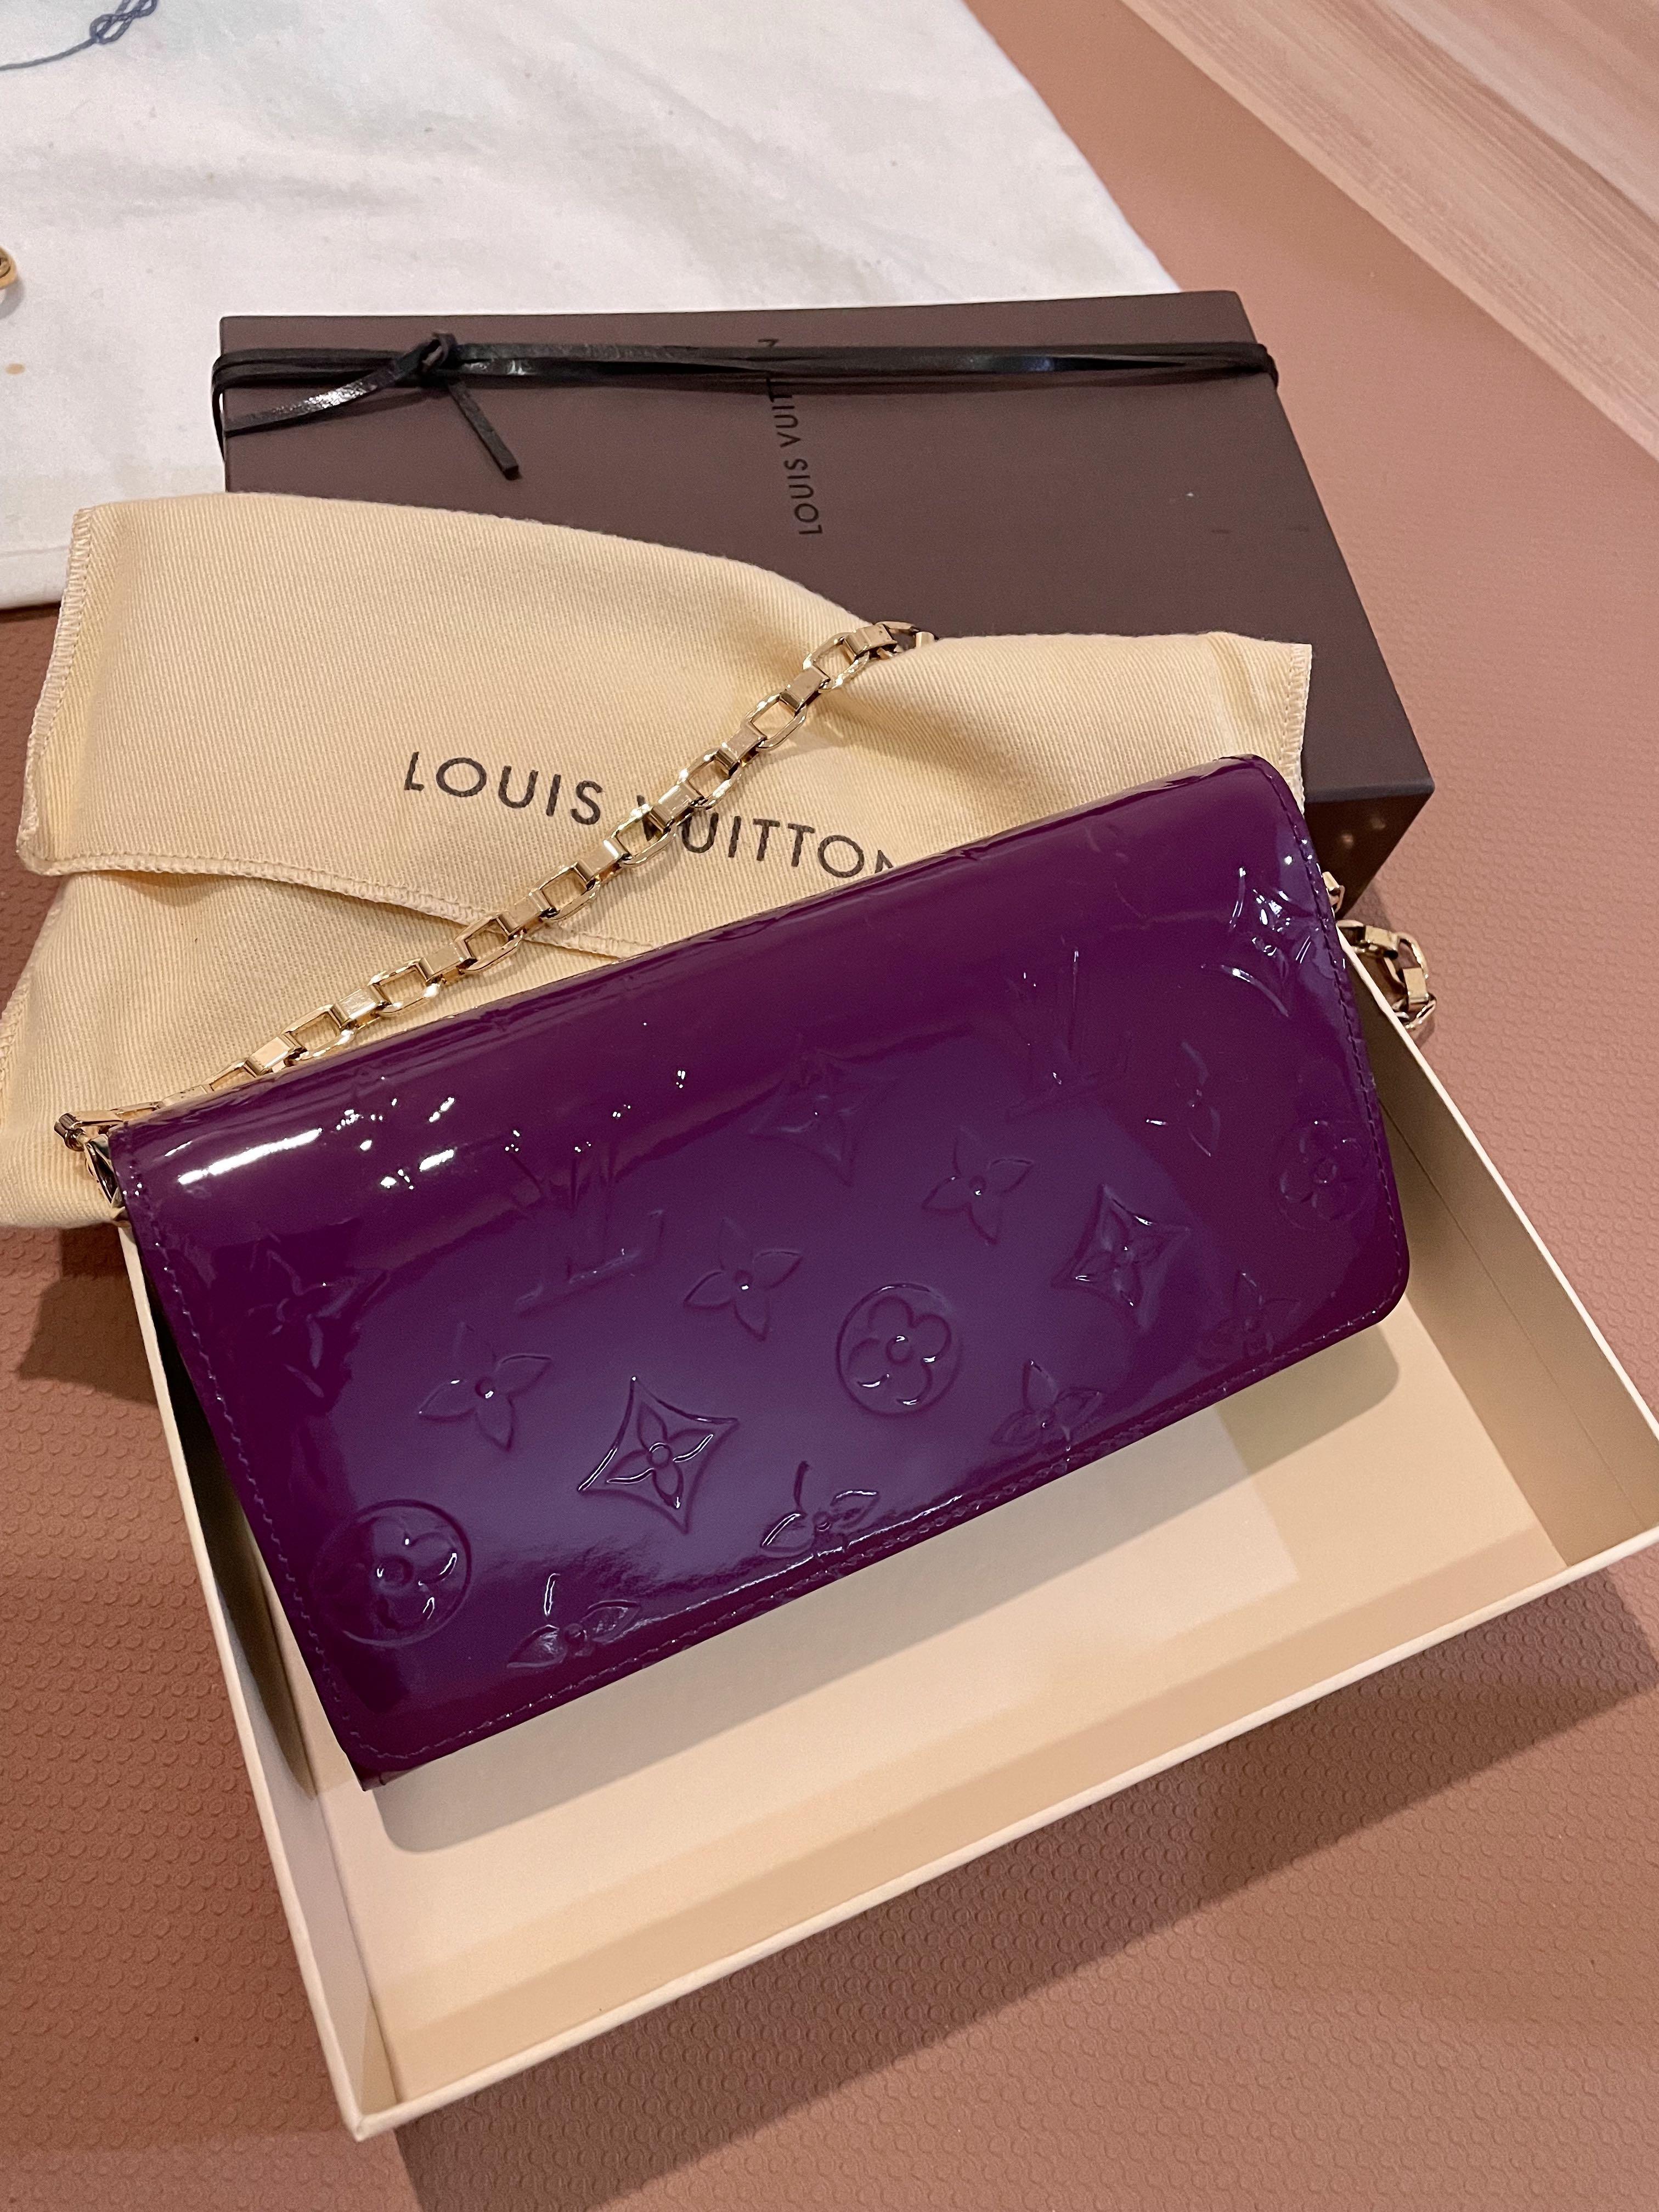 Authentic Louis Vuitton purple Vernis Sarah Chain wallet